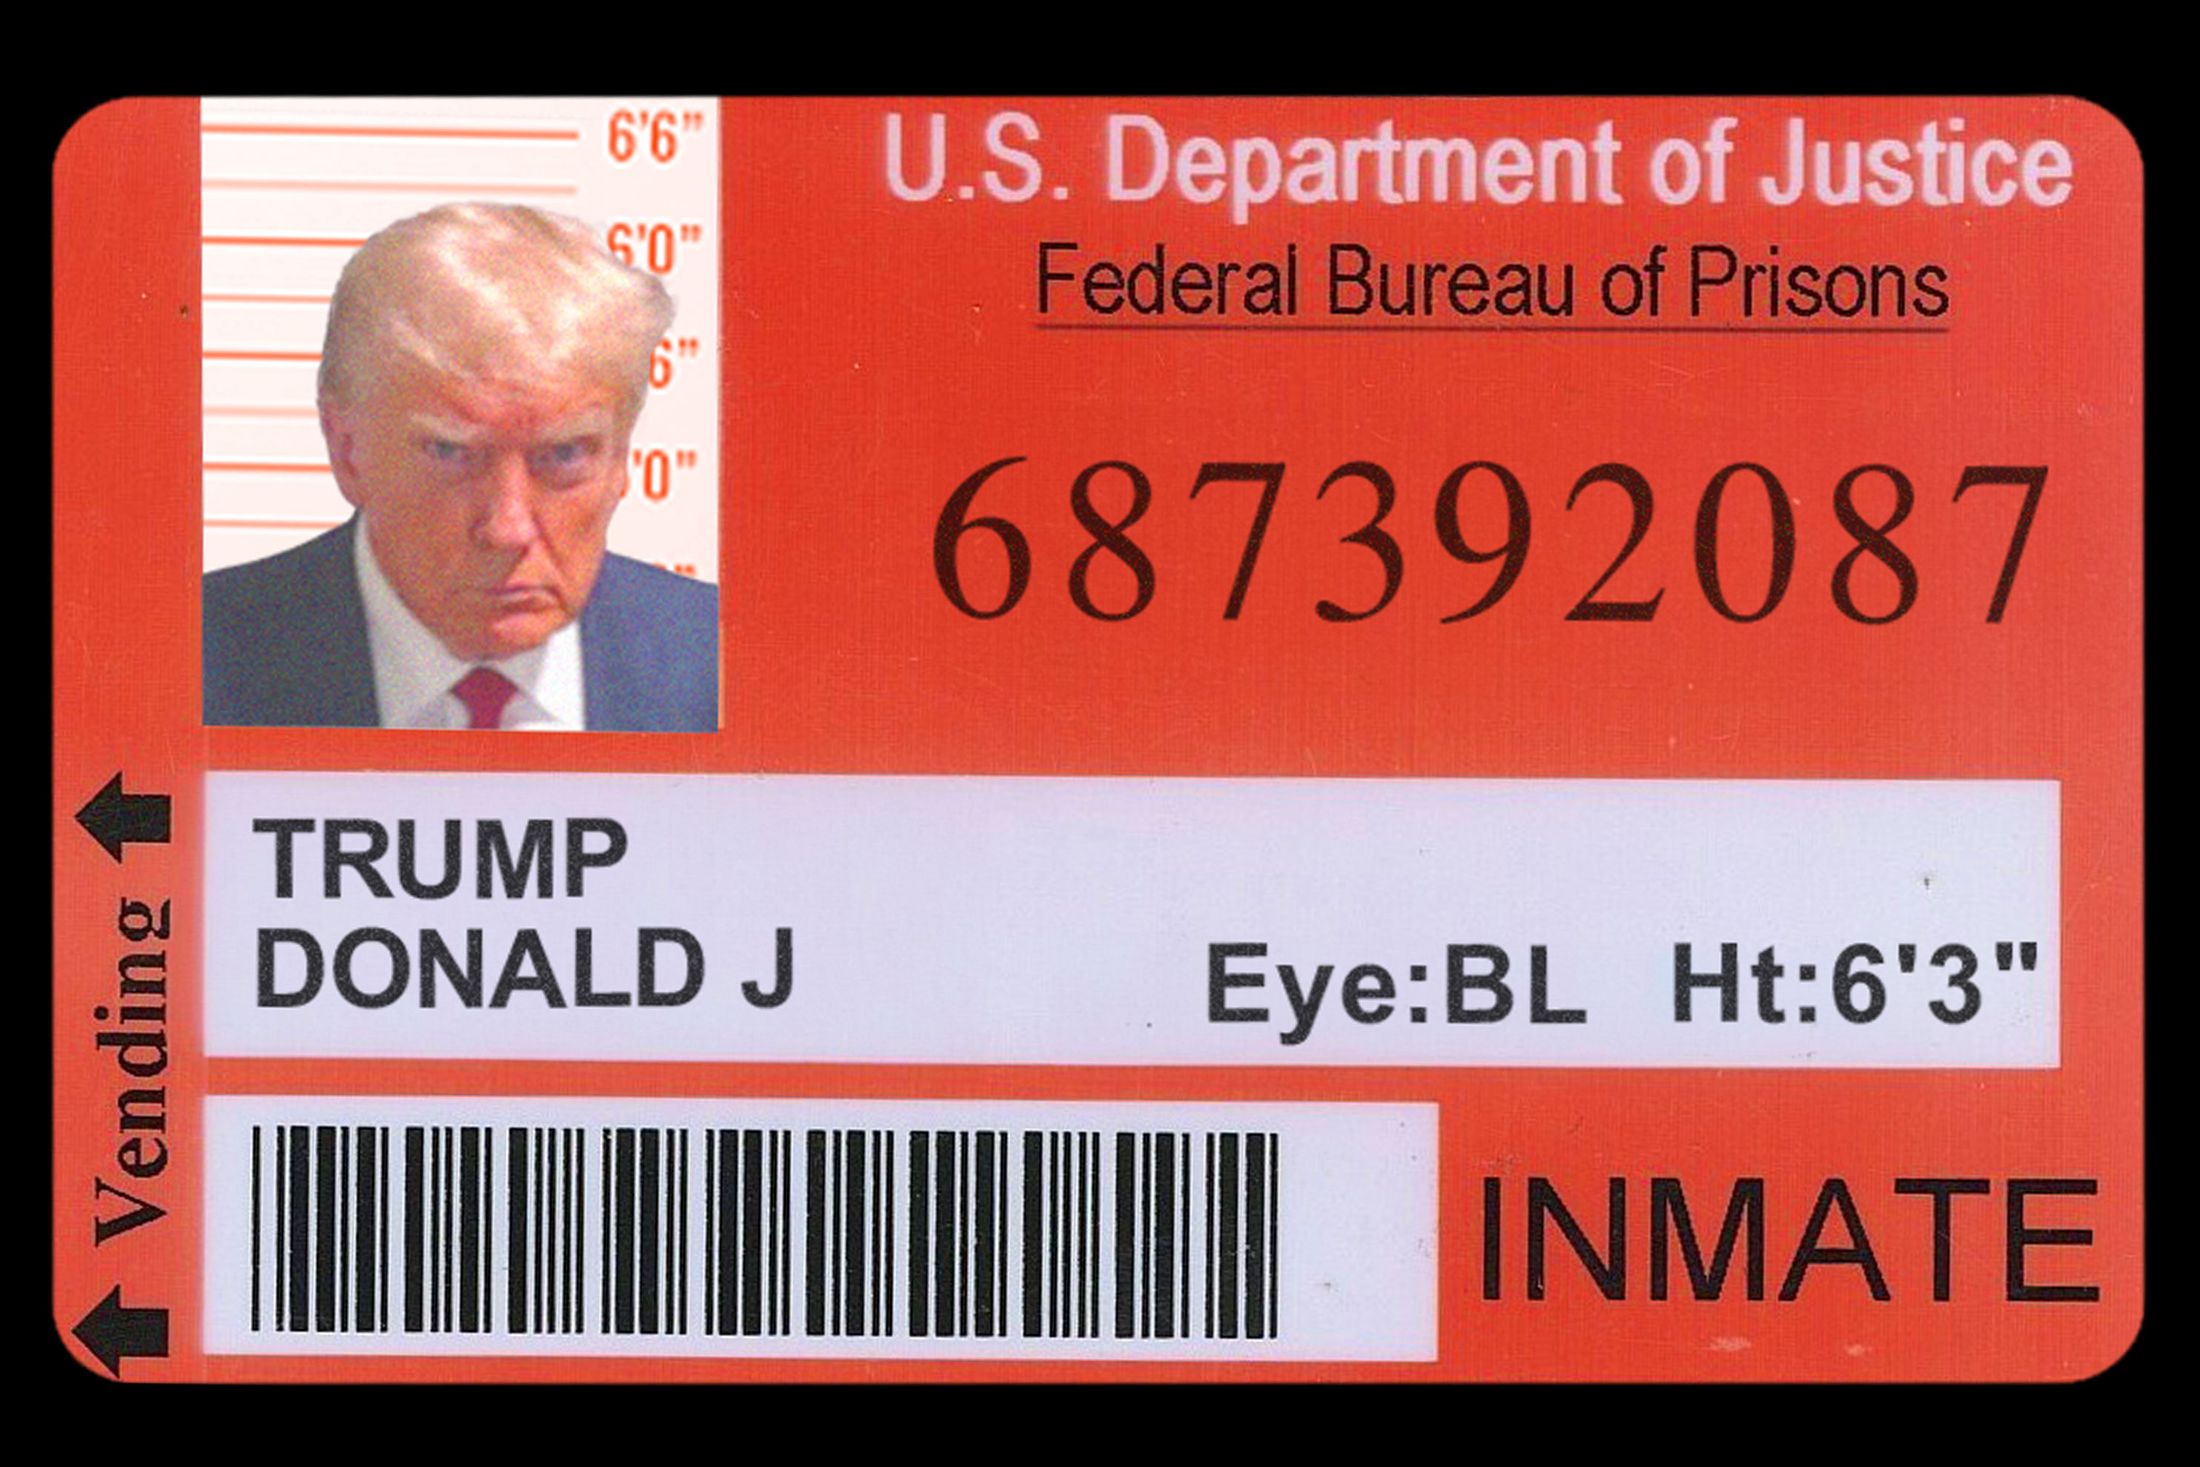 cad18f03ad420dcbf4355b76c353f0eb3b-Trump-Prison-Lede-1.2x.rhorizontal.w1100.jpg